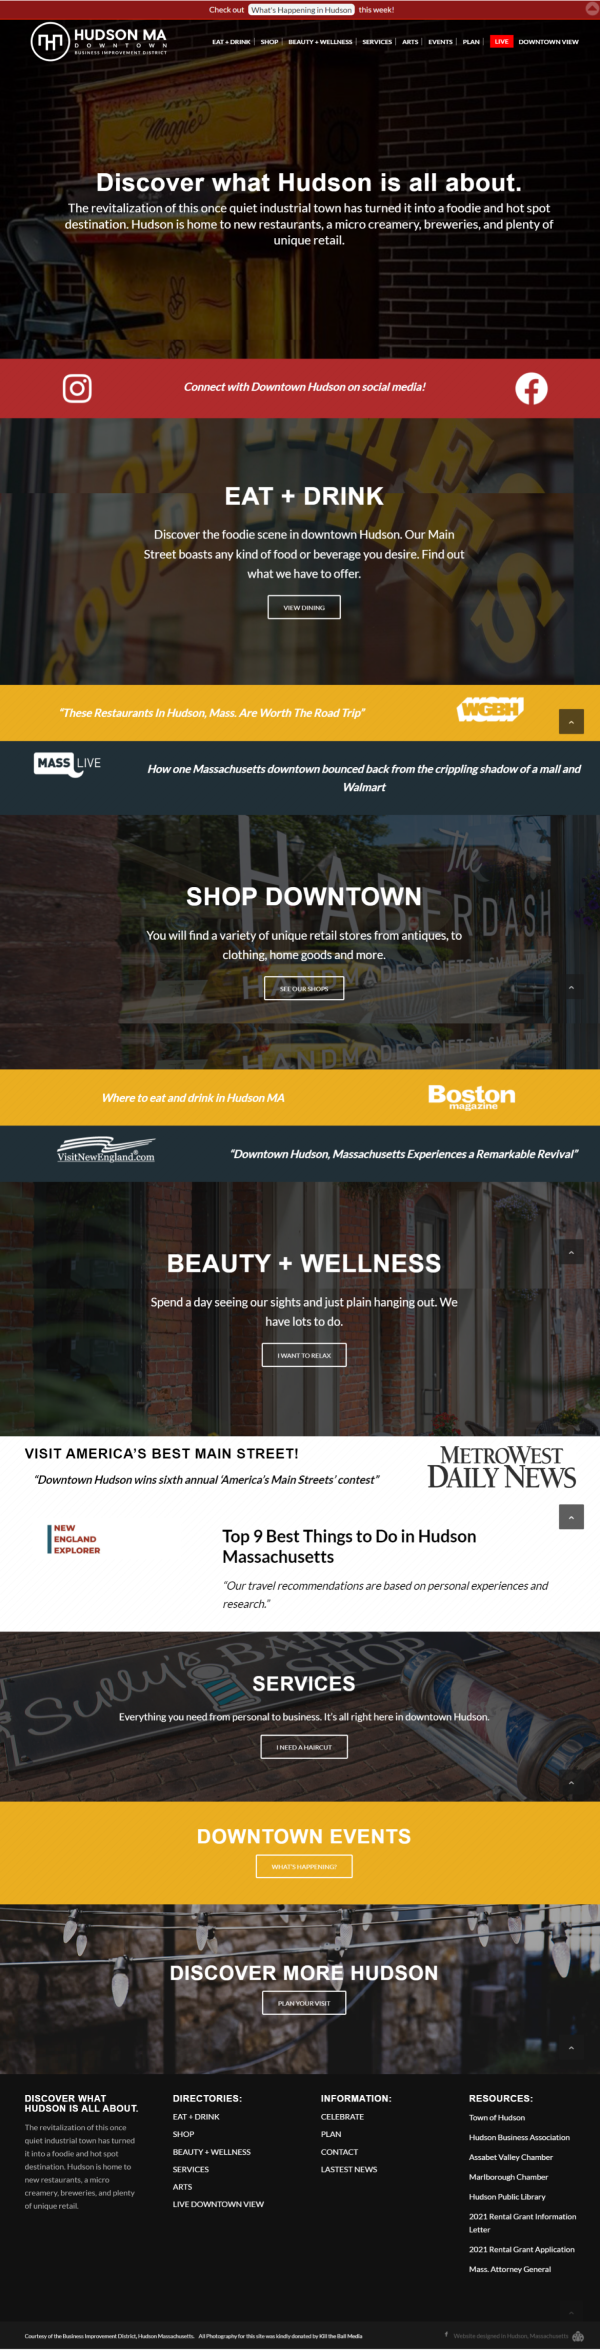 Discover Hudson Non-Profit Business Improvement District - Tourism Website Design